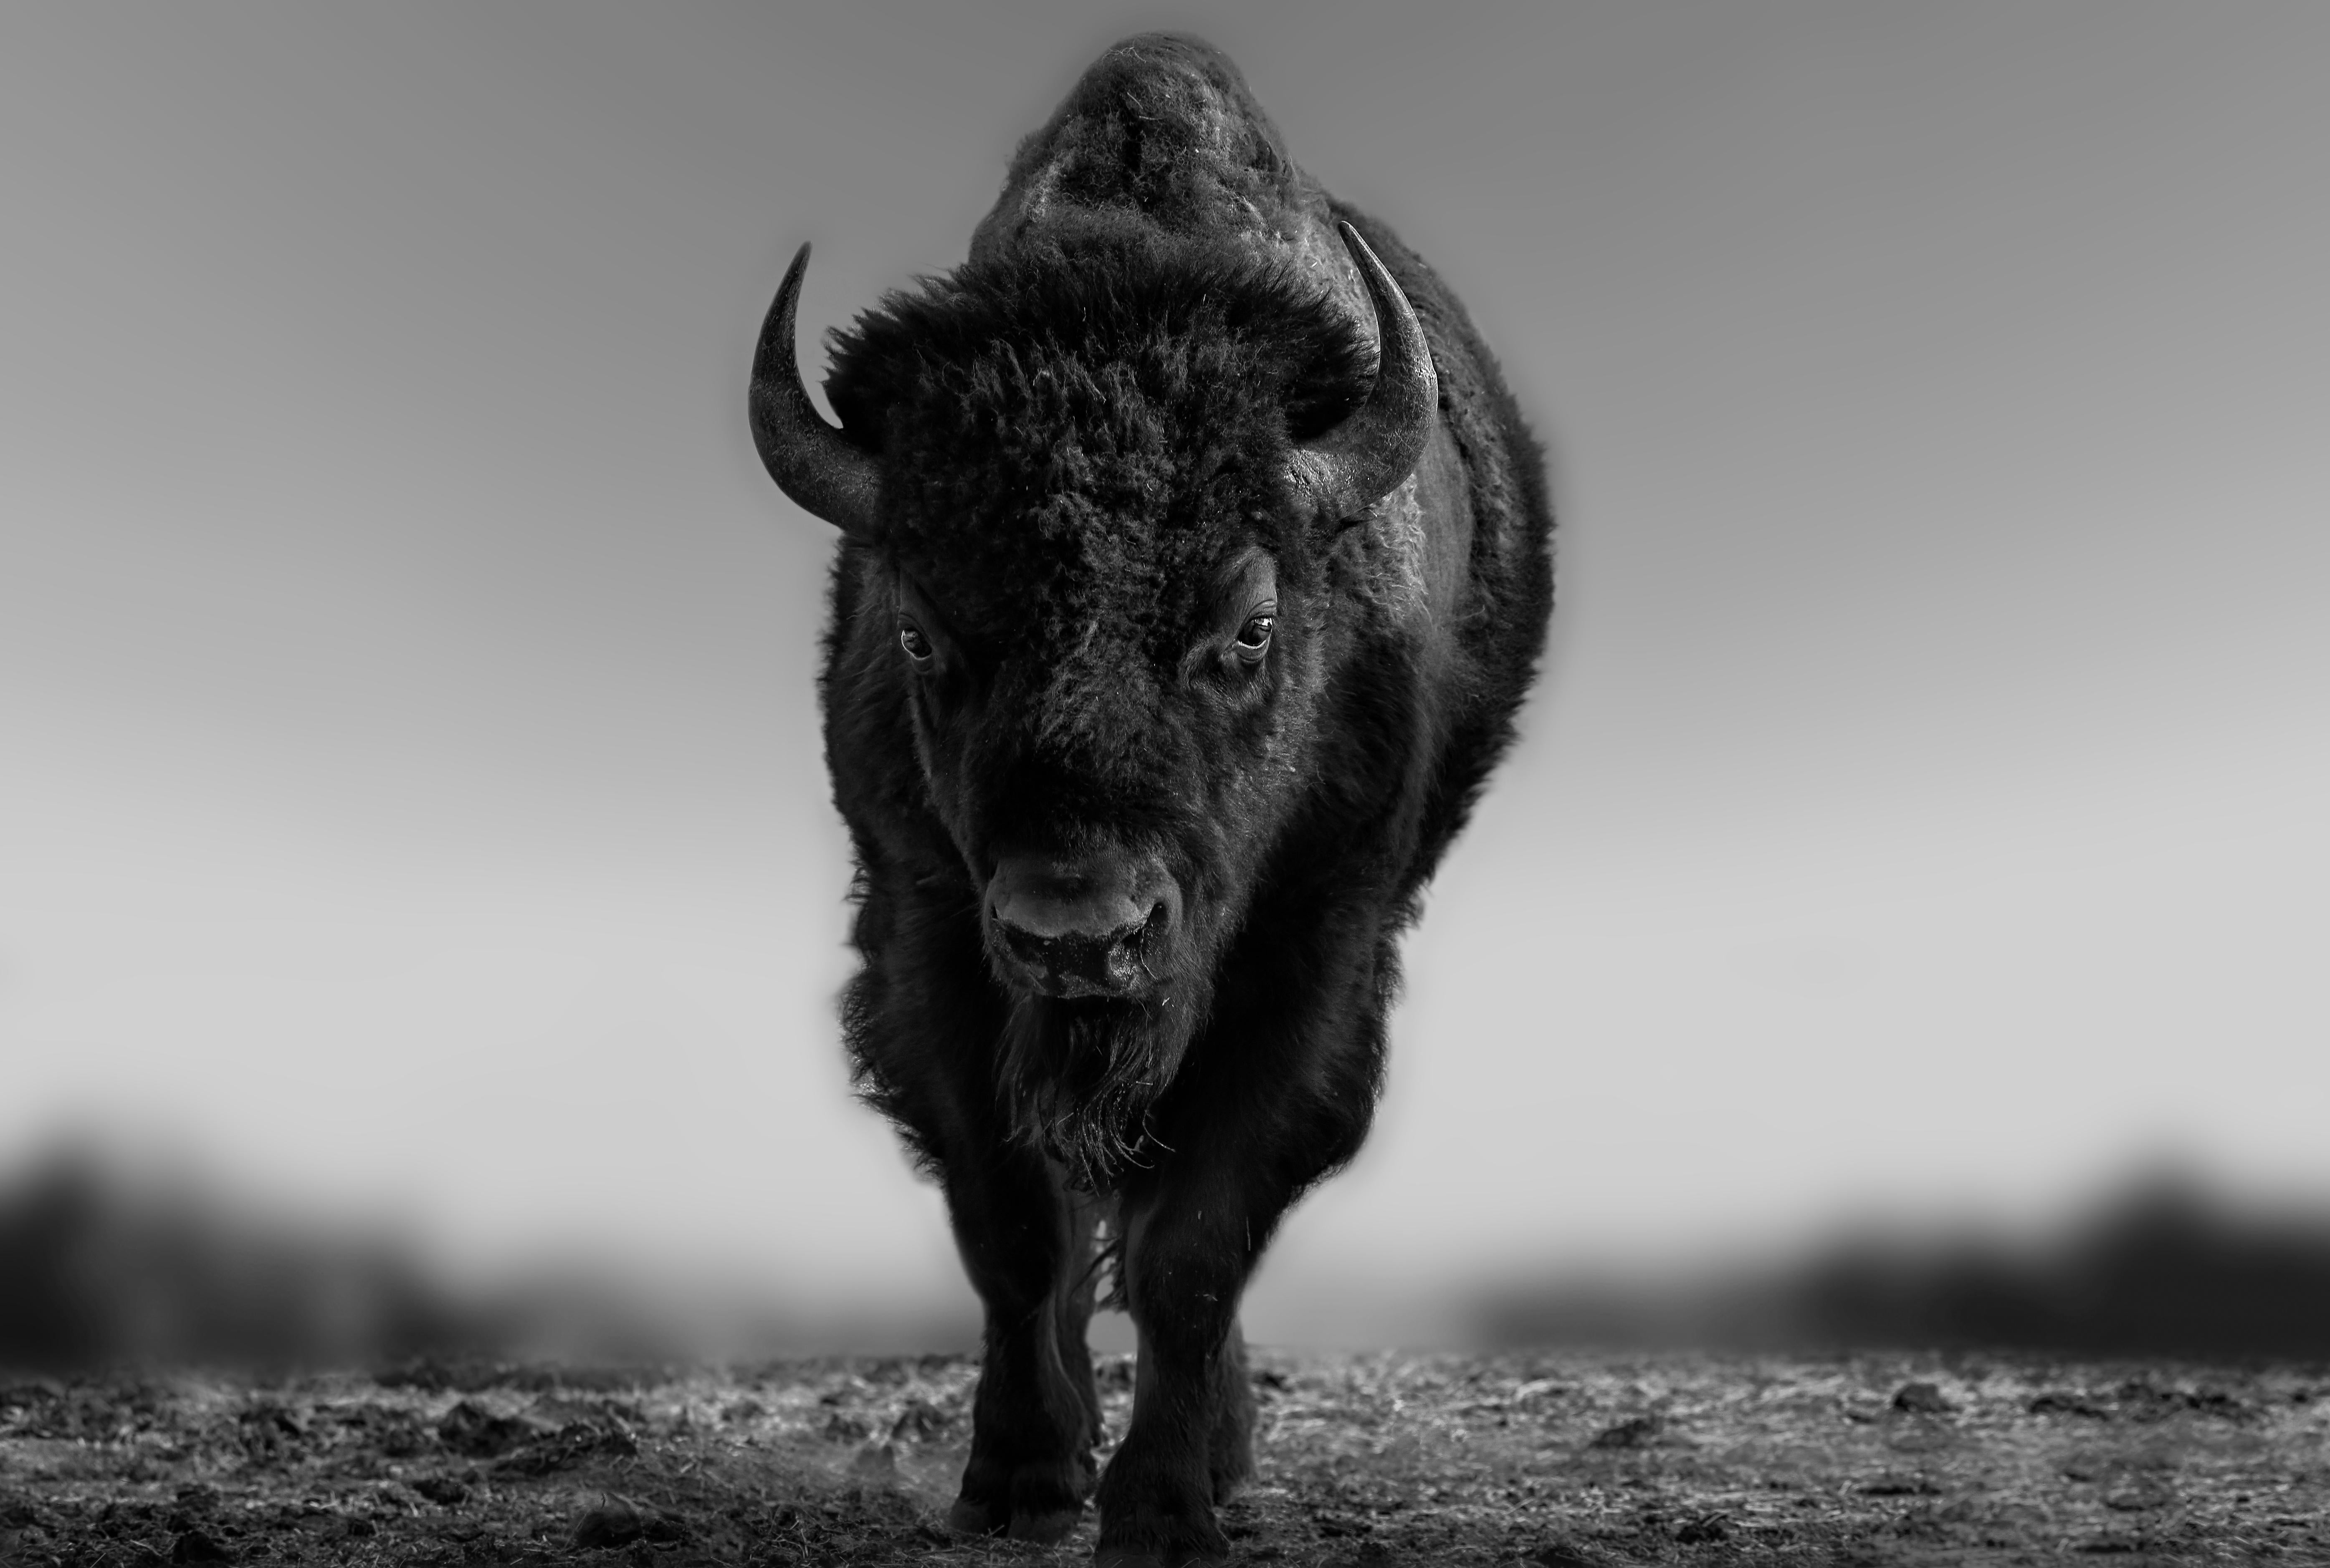 Shane Russeck Black and White Photograph – „The Beast“ 36x48 Schwarz-Weiß-Fotografie von Bison Buffalo, unsignierte Fotografie